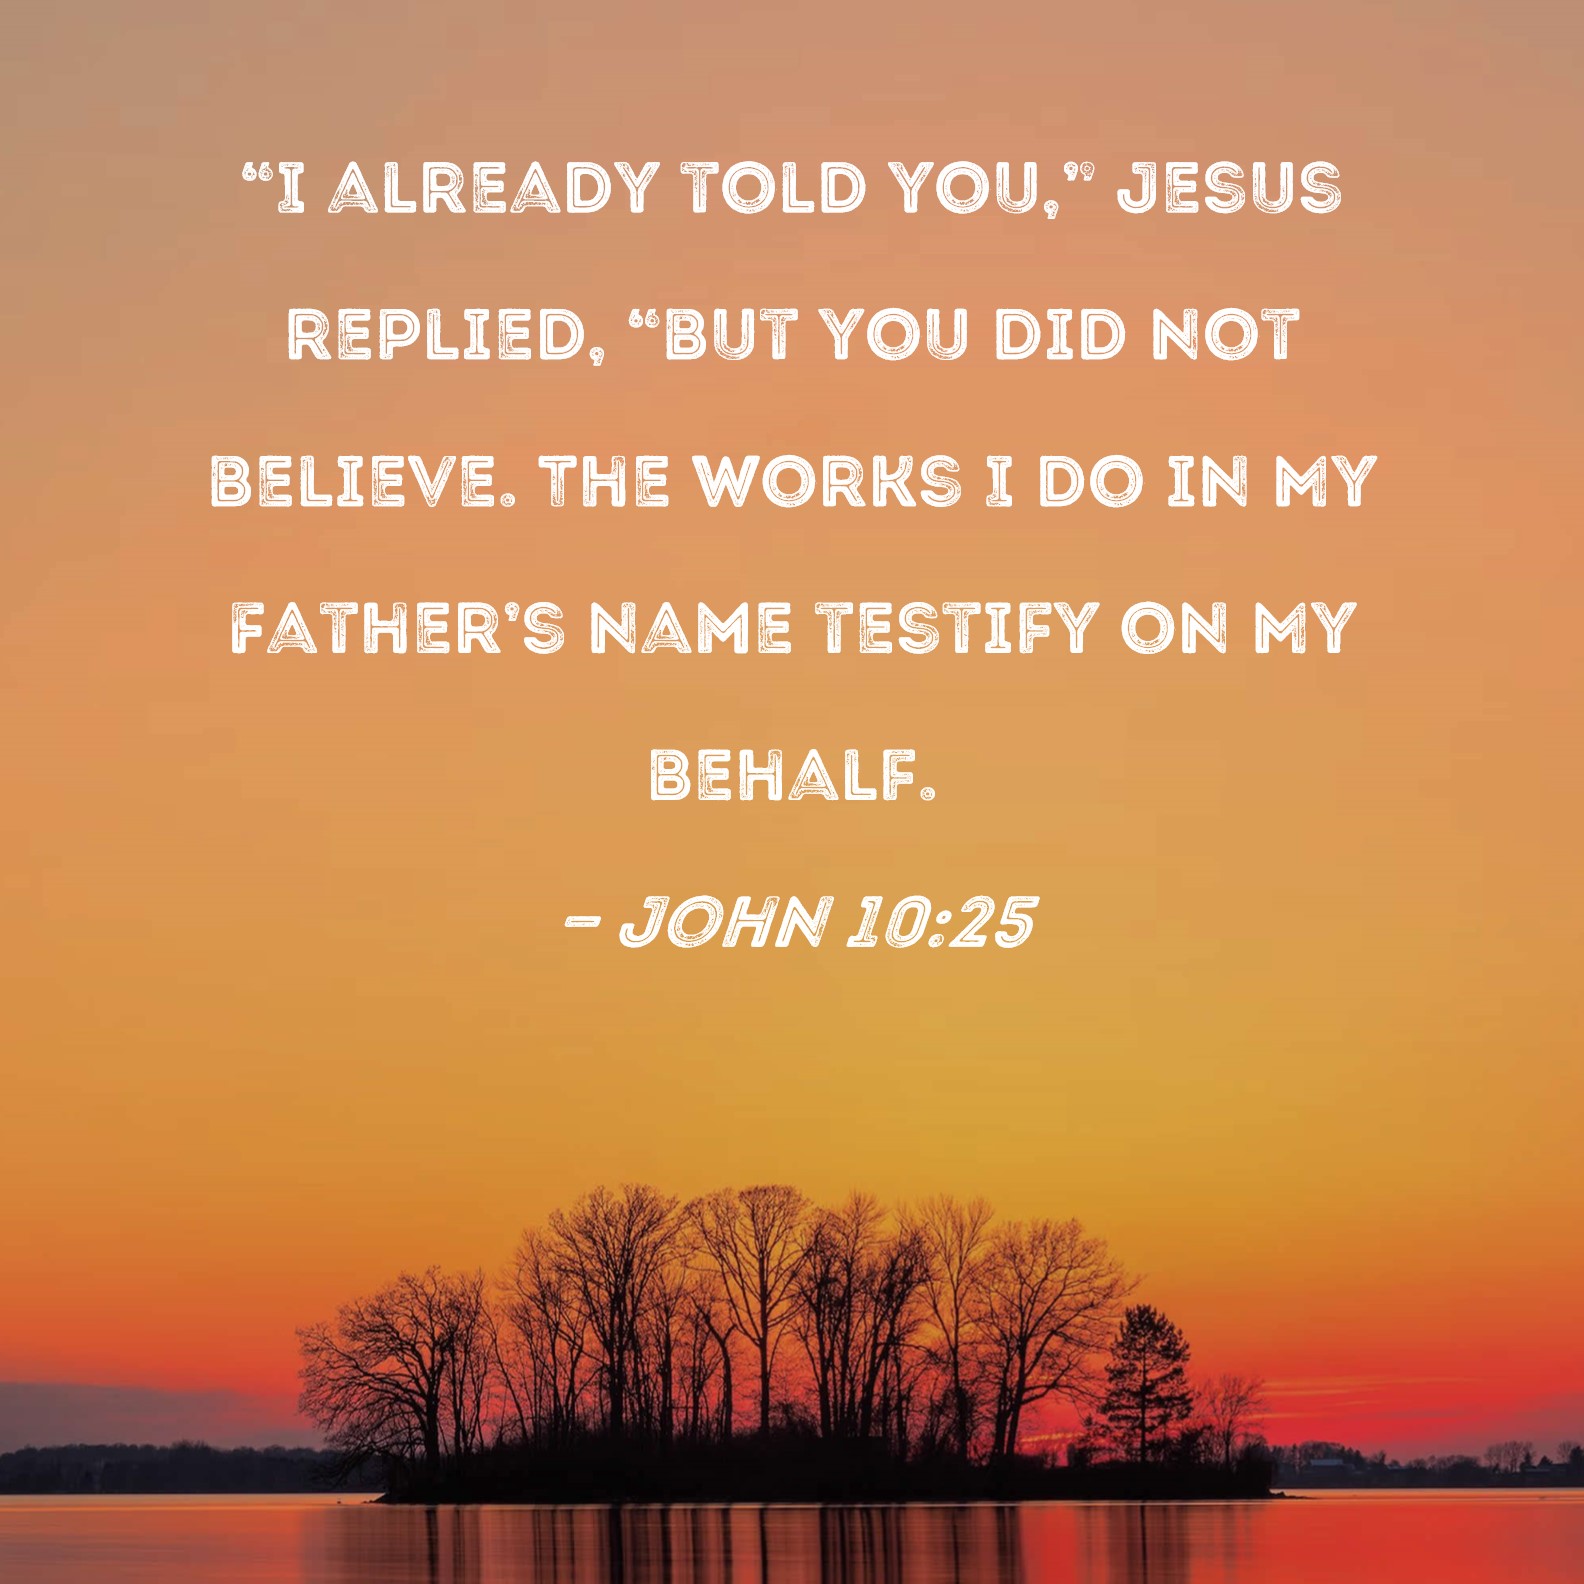 John 10:25 